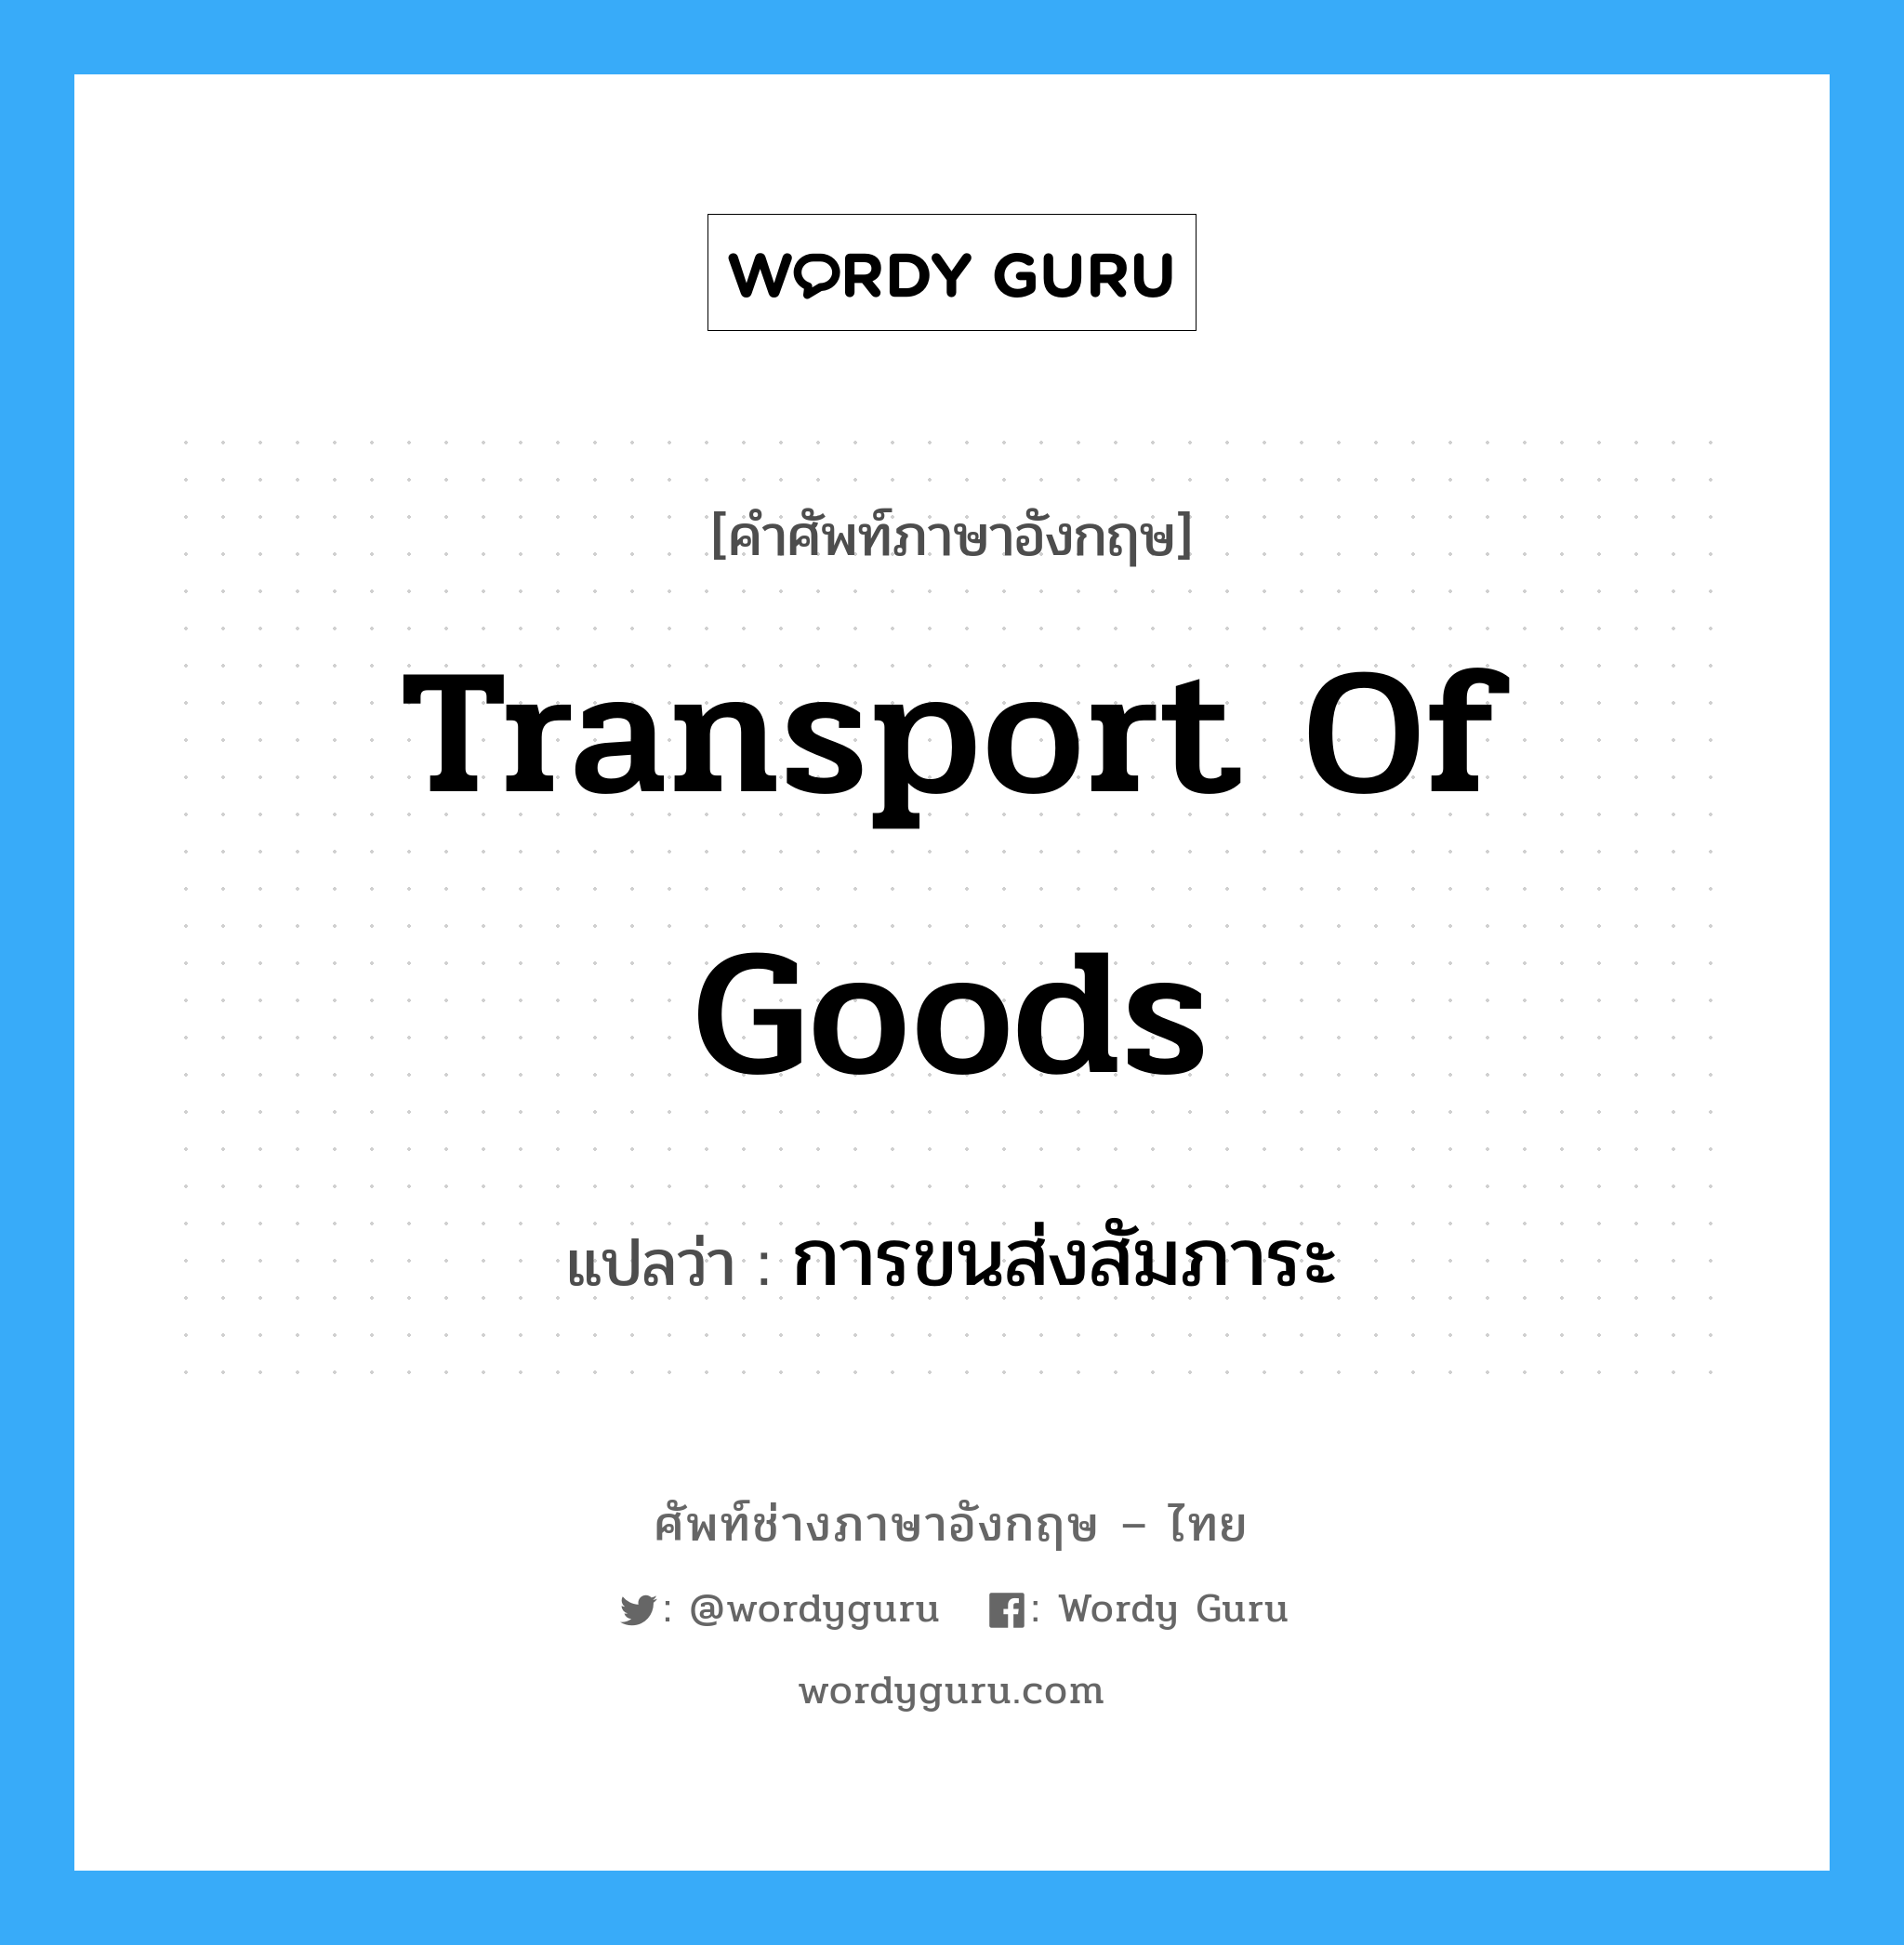 การขนส่งสัมภาระ ภาษาอังกฤษ?, คำศัพท์ช่างภาษาอังกฤษ - ไทย การขนส่งสัมภาระ คำศัพท์ภาษาอังกฤษ การขนส่งสัมภาระ แปลว่า Transport of Goods